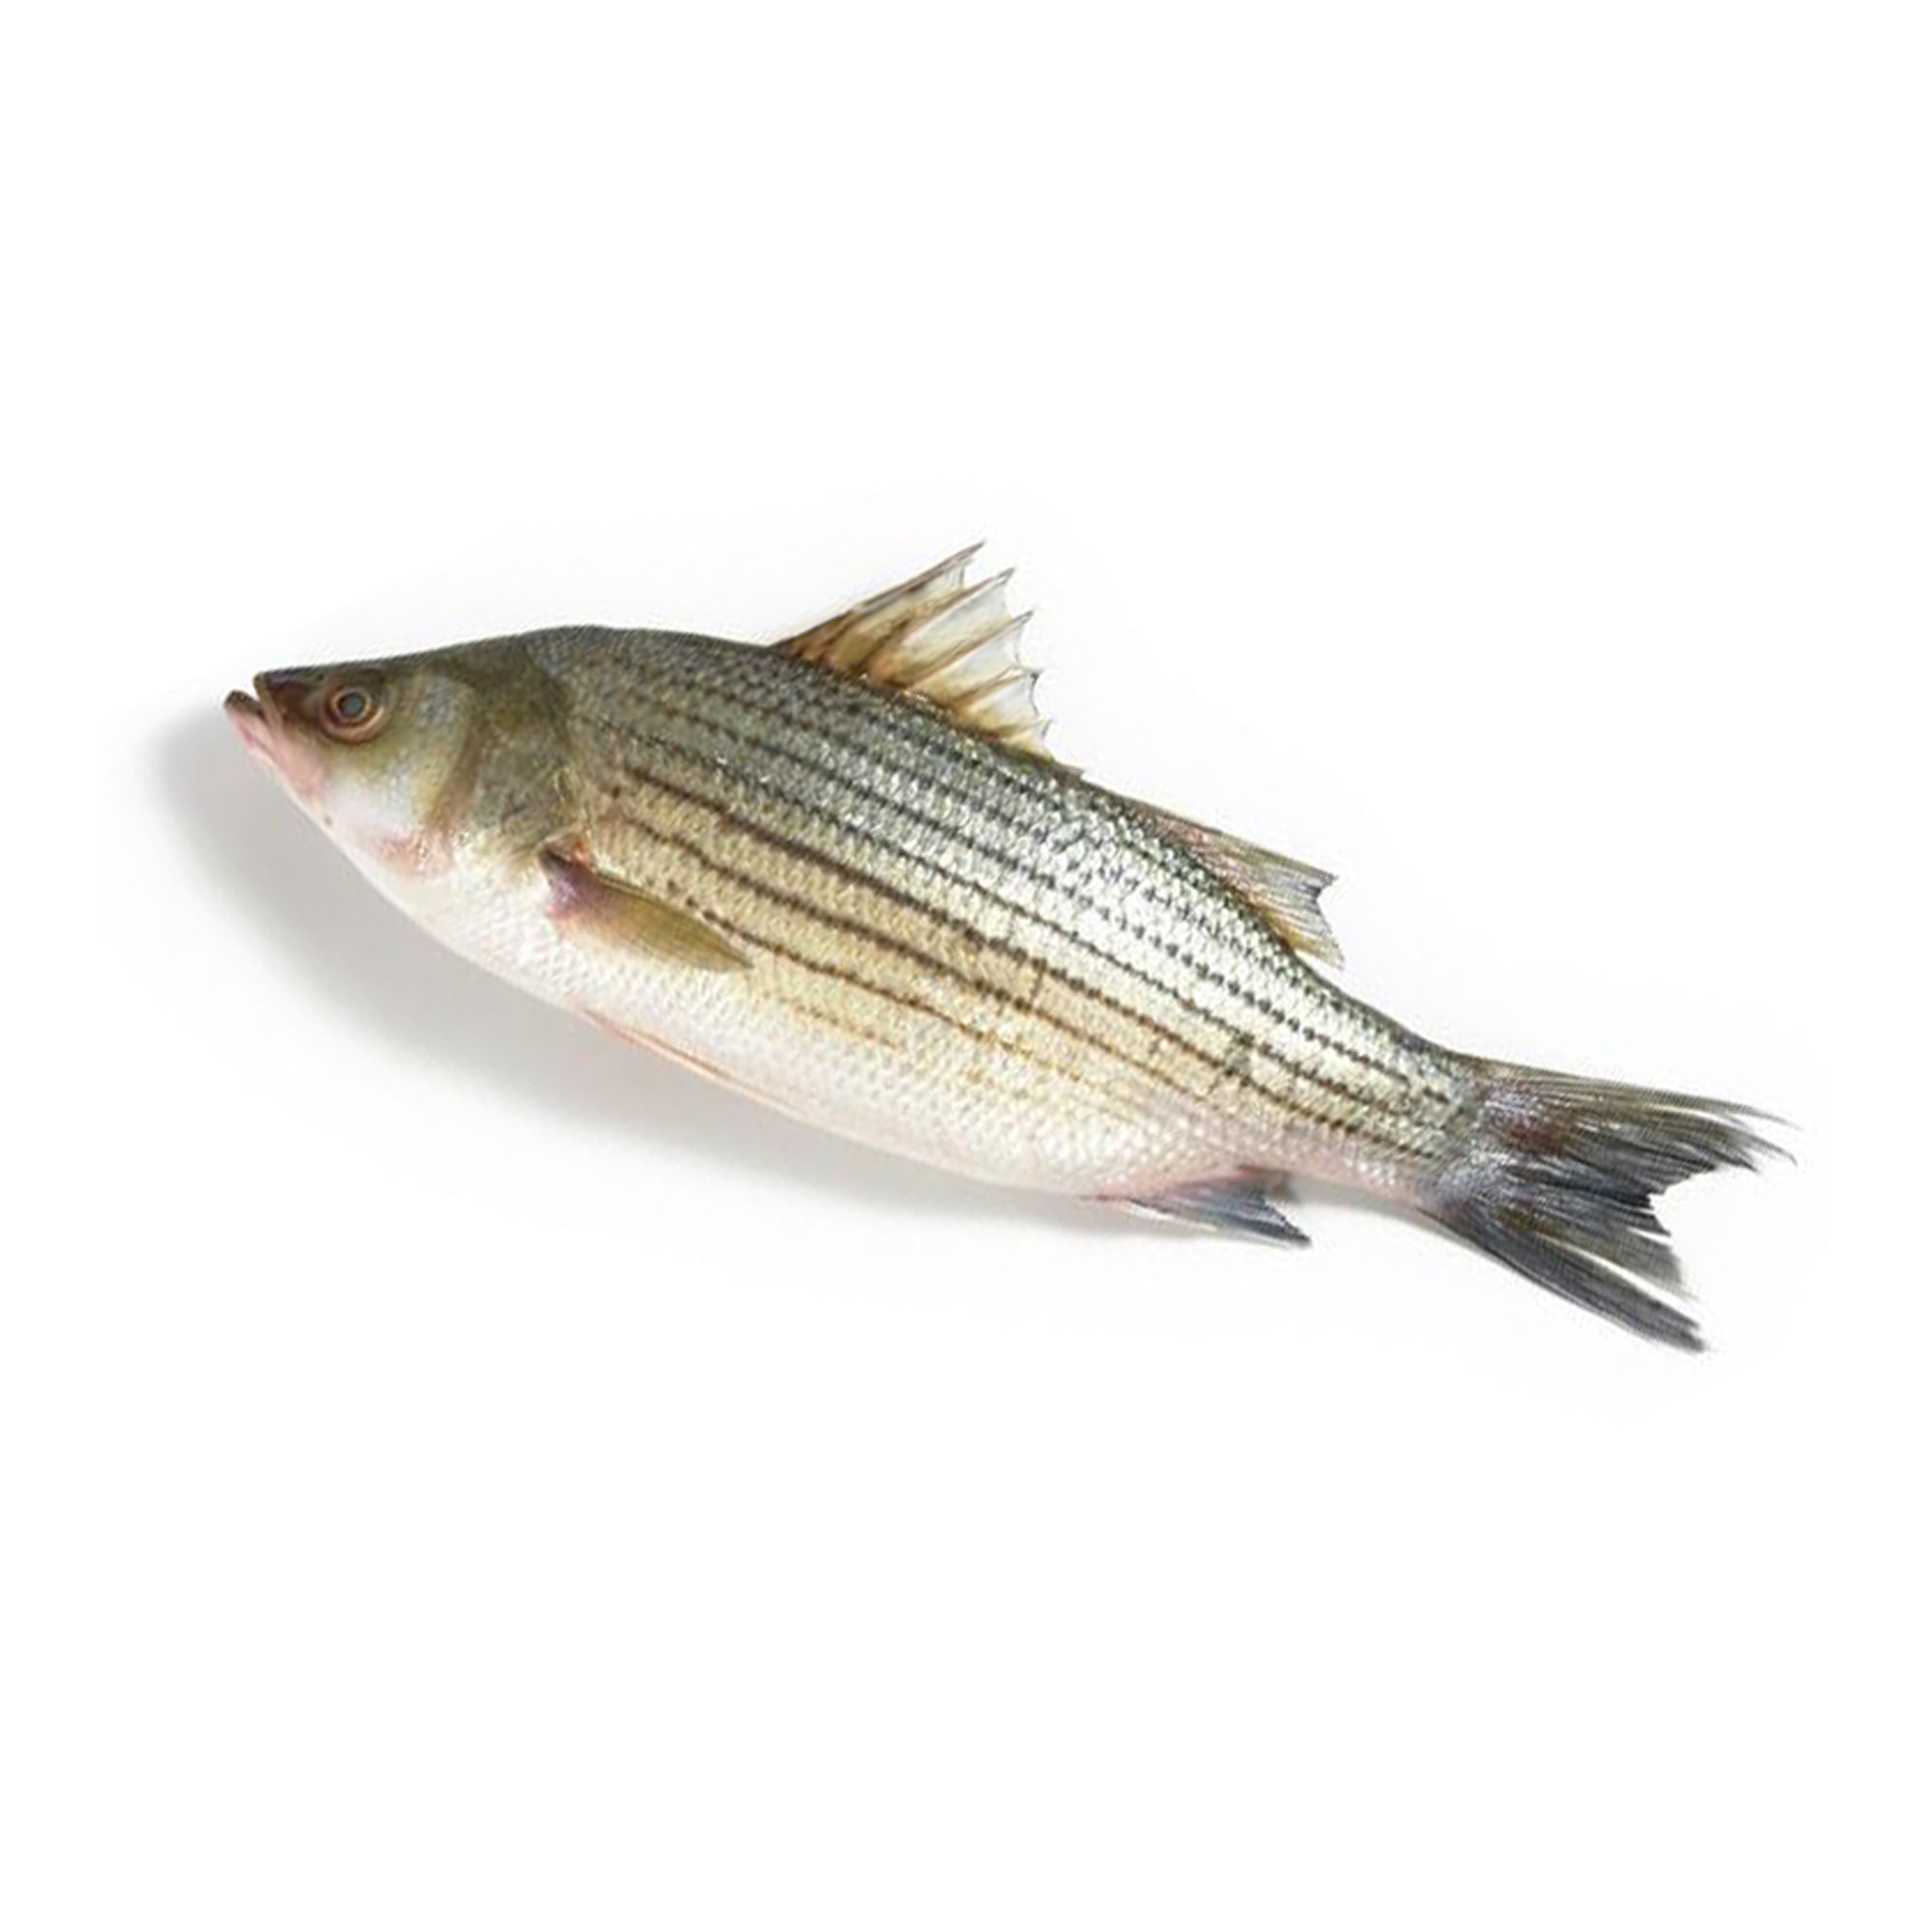 LIVE striped bass fish – Al Premium Food Mart - McCowan